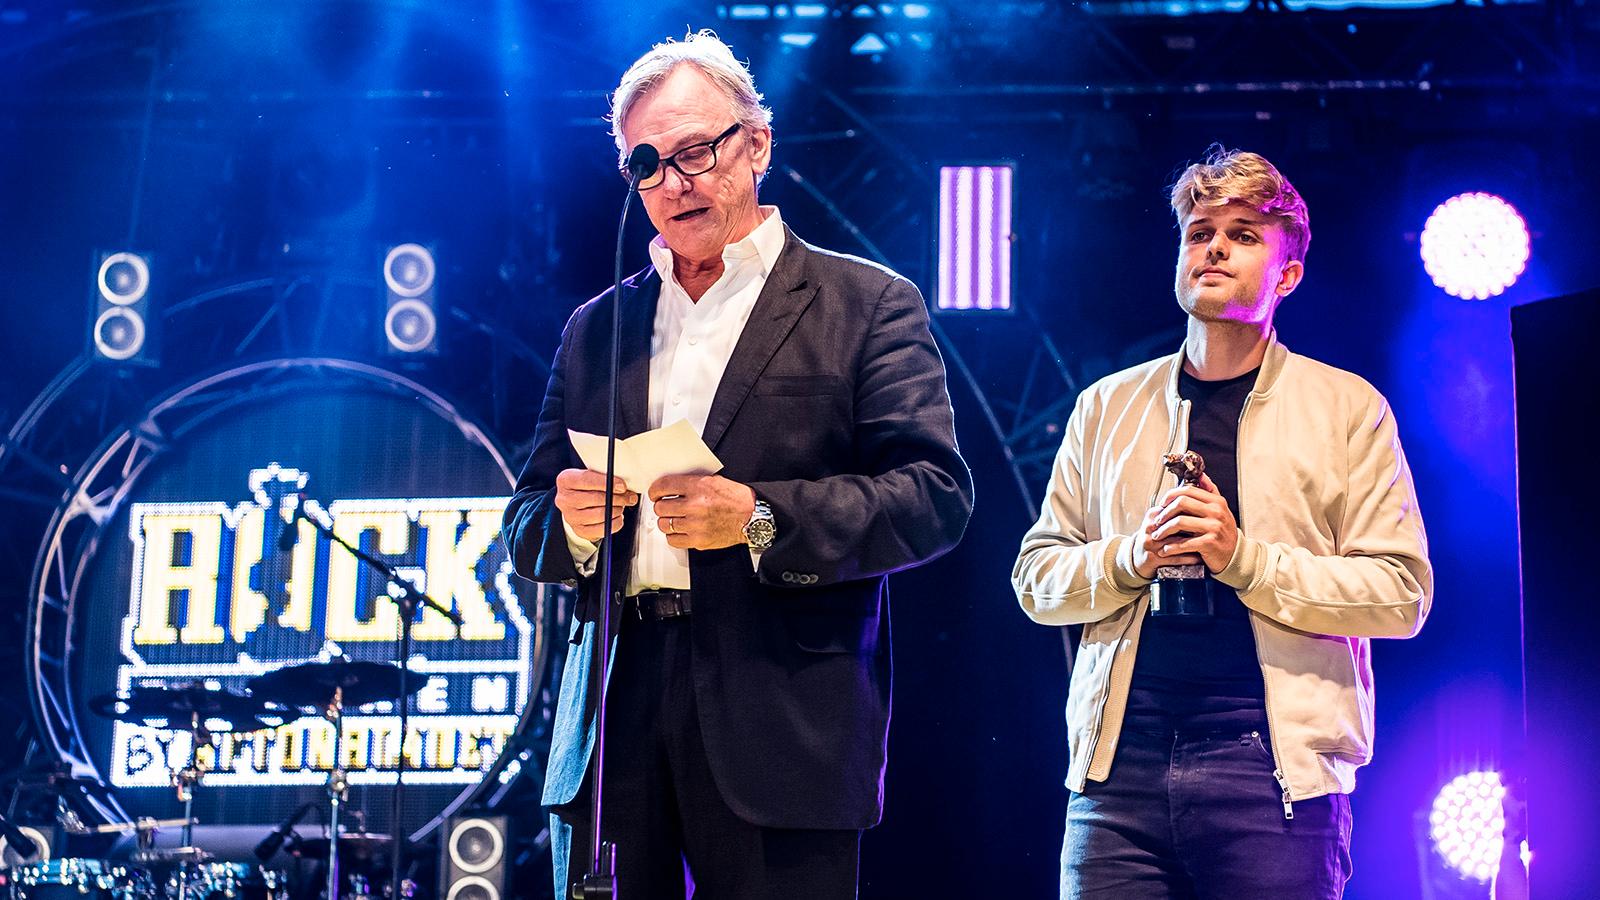 Sandro Cavazza och Aviciis far Klas Bergling tog emot priset för ”Årets svenska låt” på Rockbjörnen 2018, för låten ”Without you”, som Sandro skrev ihop med Avicii.